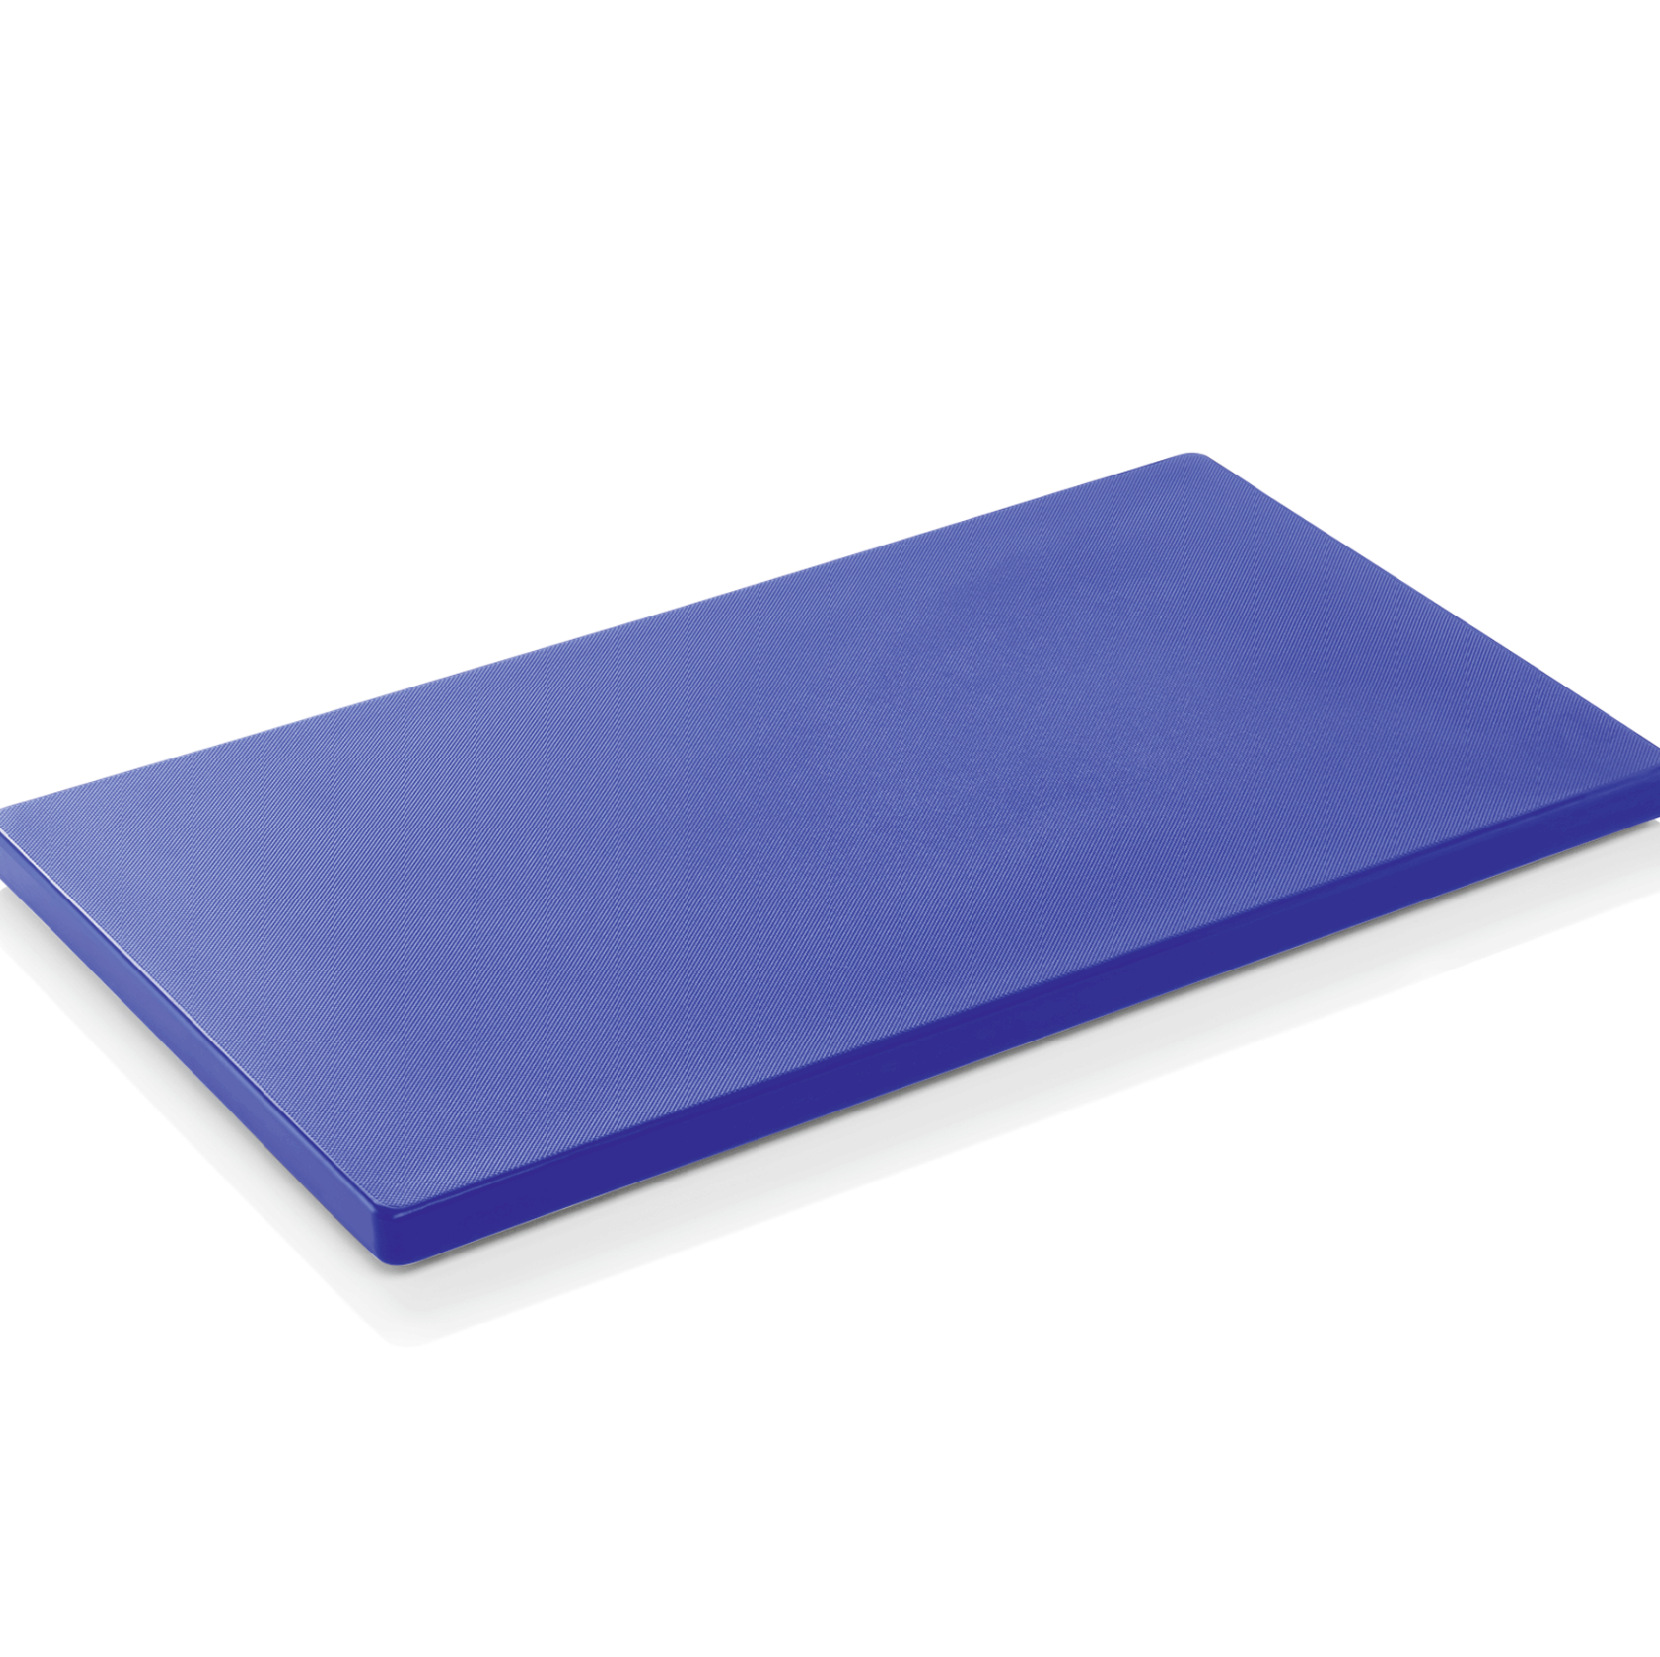 Schneidbrett HACCP, 60 x 40 x 2 cm, blau, Polyethylen